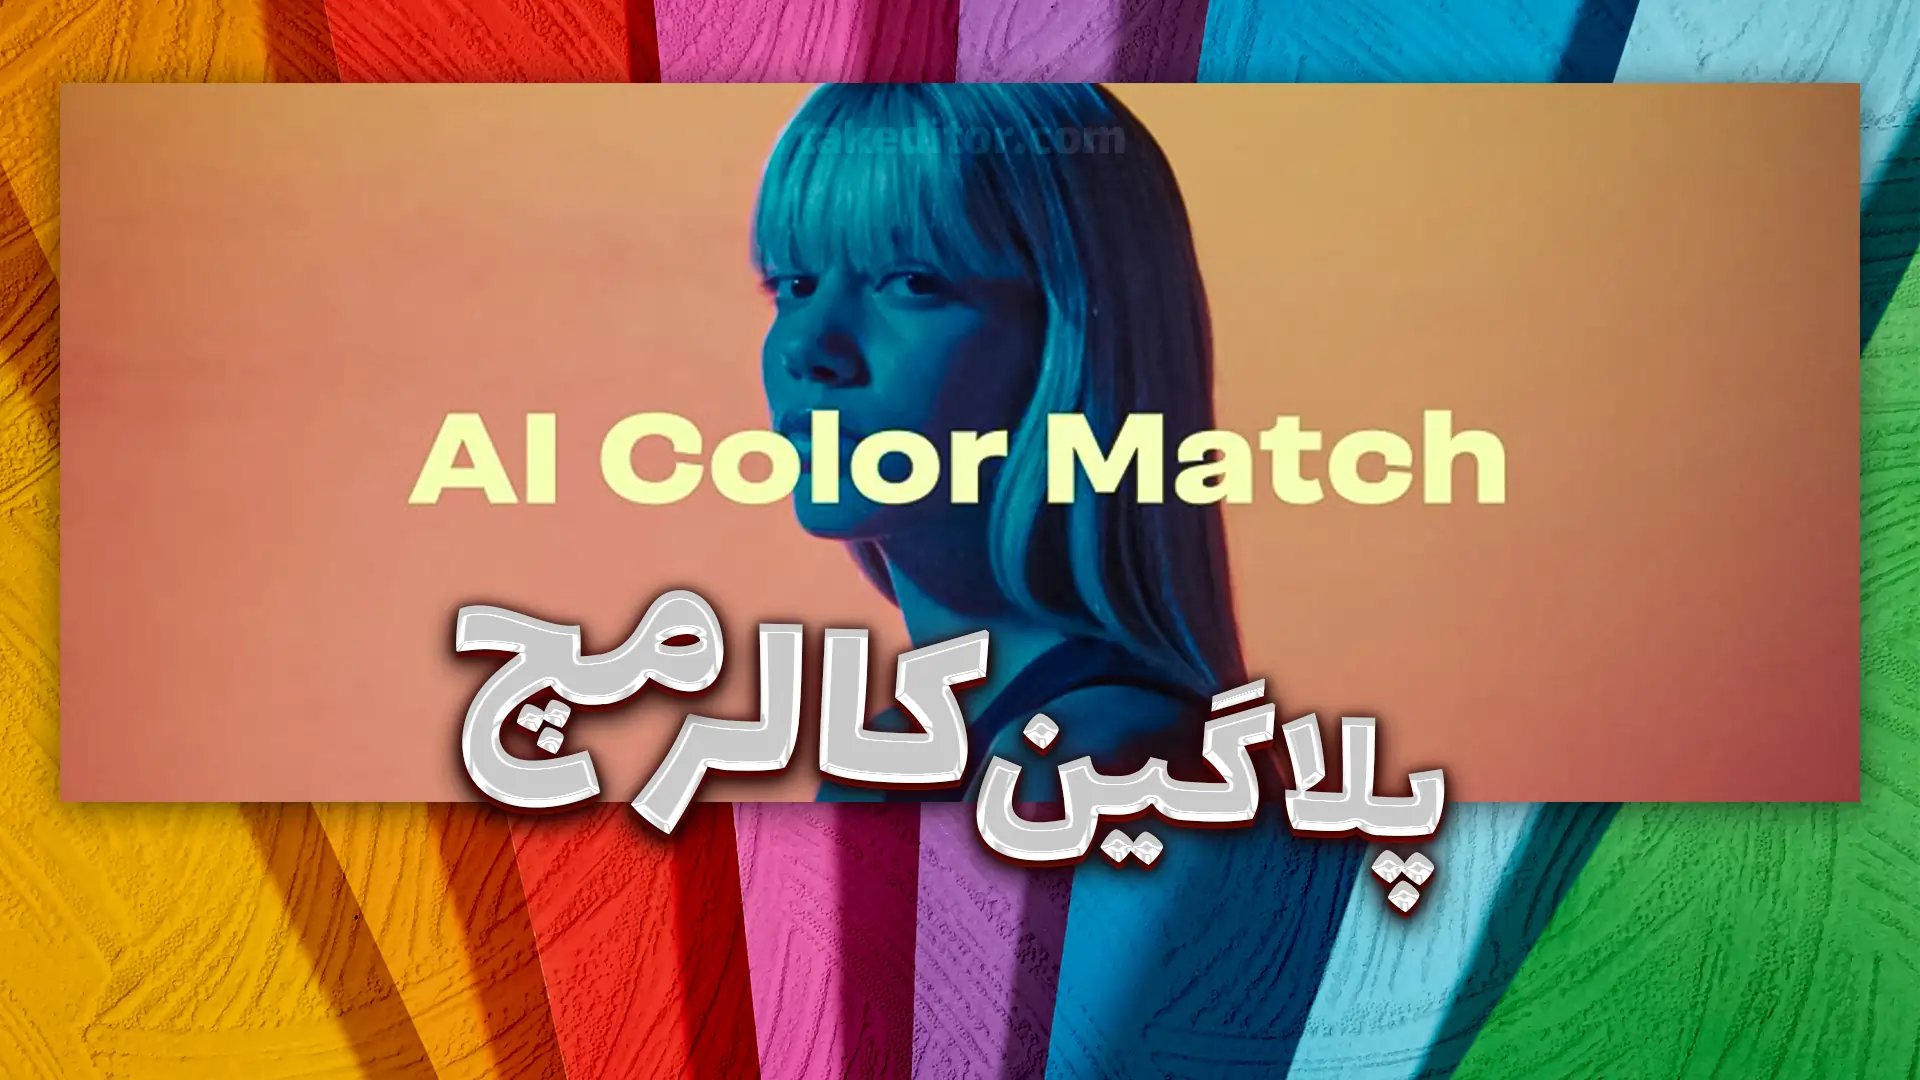 پلاگین-AI Color Match-برای افترافکت